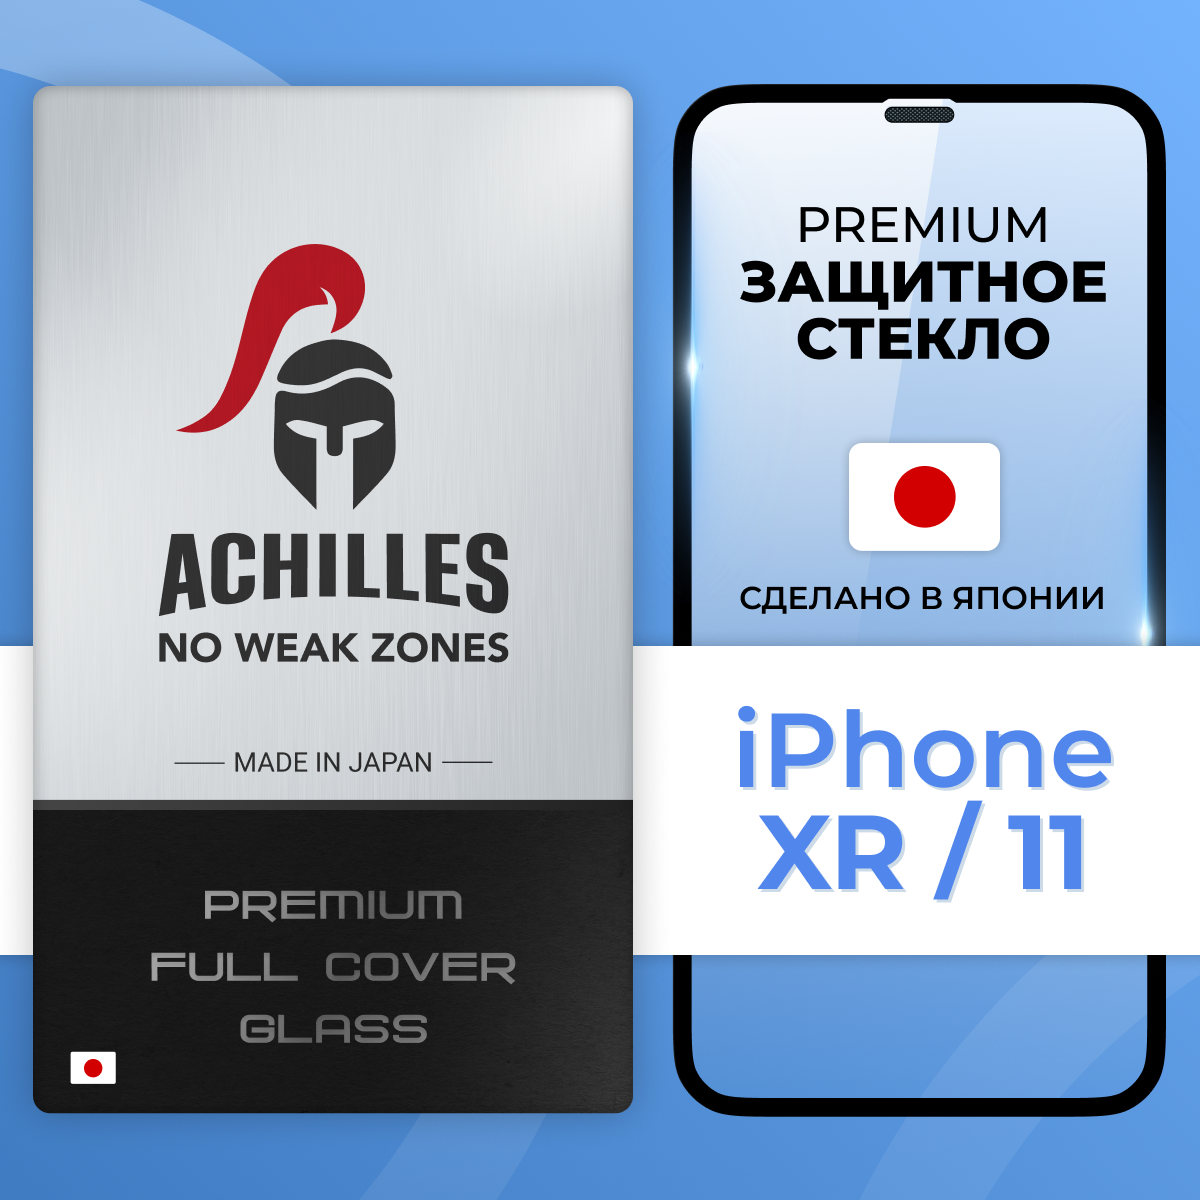 LS / Premium защитное стекло для Apple iPhone XR (10 R) и iPhone 11 Achilles 5D с защитной сеткой на динамике / Эпл Айфон Икс Эр (10 Эр) и Айфон 11